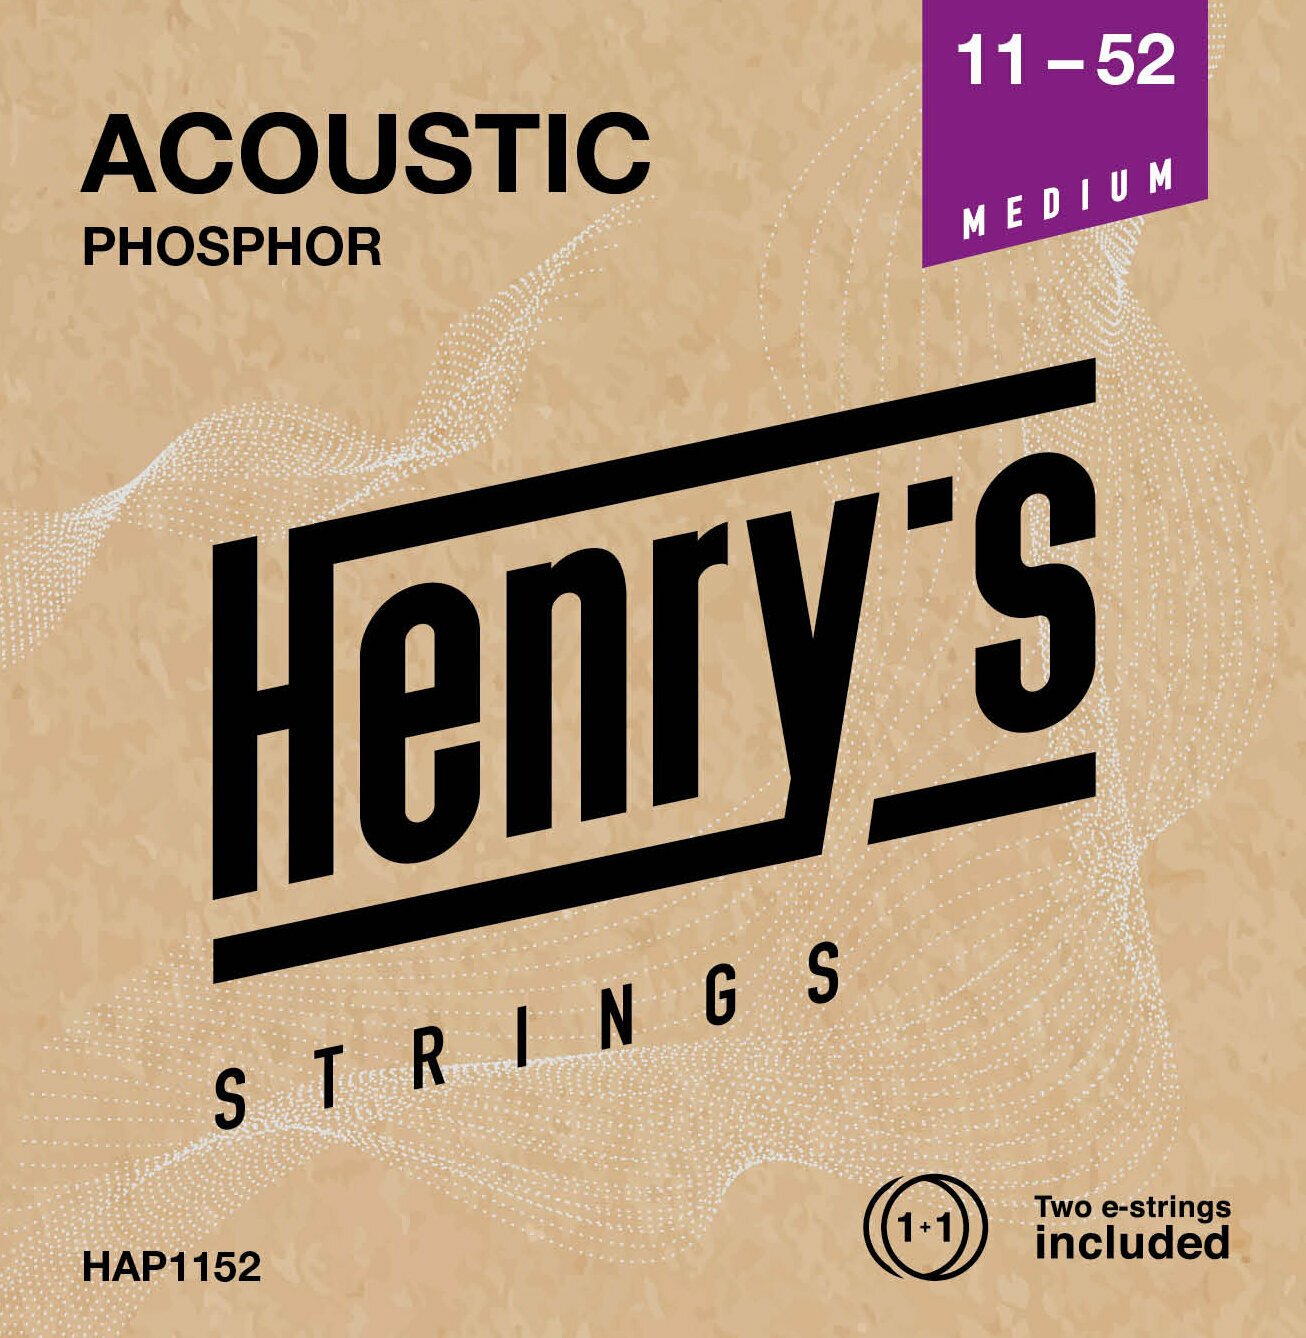 Guitar strings Henry's Phosphor 11-52